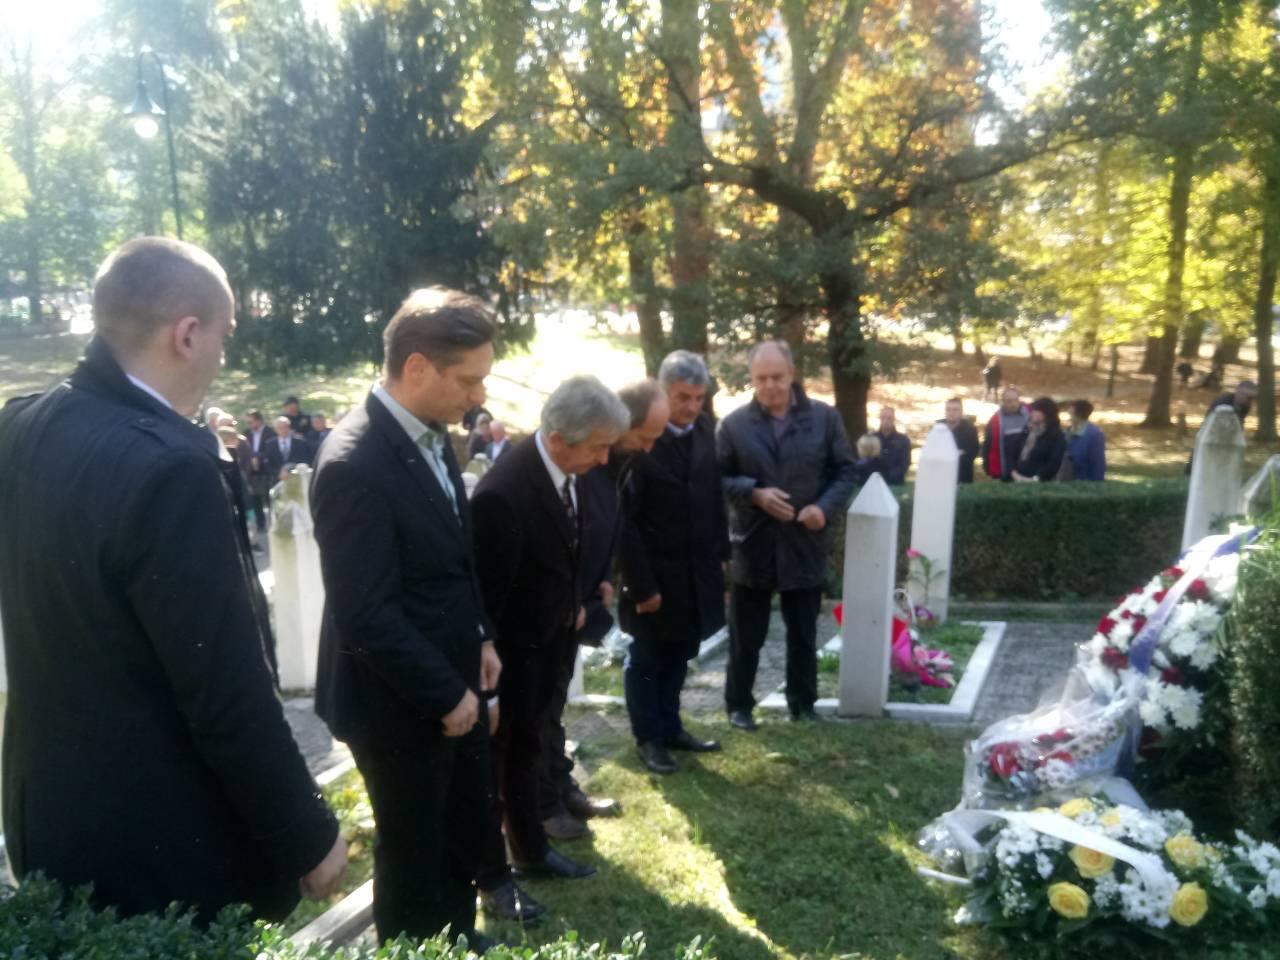 Obilježena 25. godišnjica ubistva pripadnika MUP-a u akciji "Trebević 2"